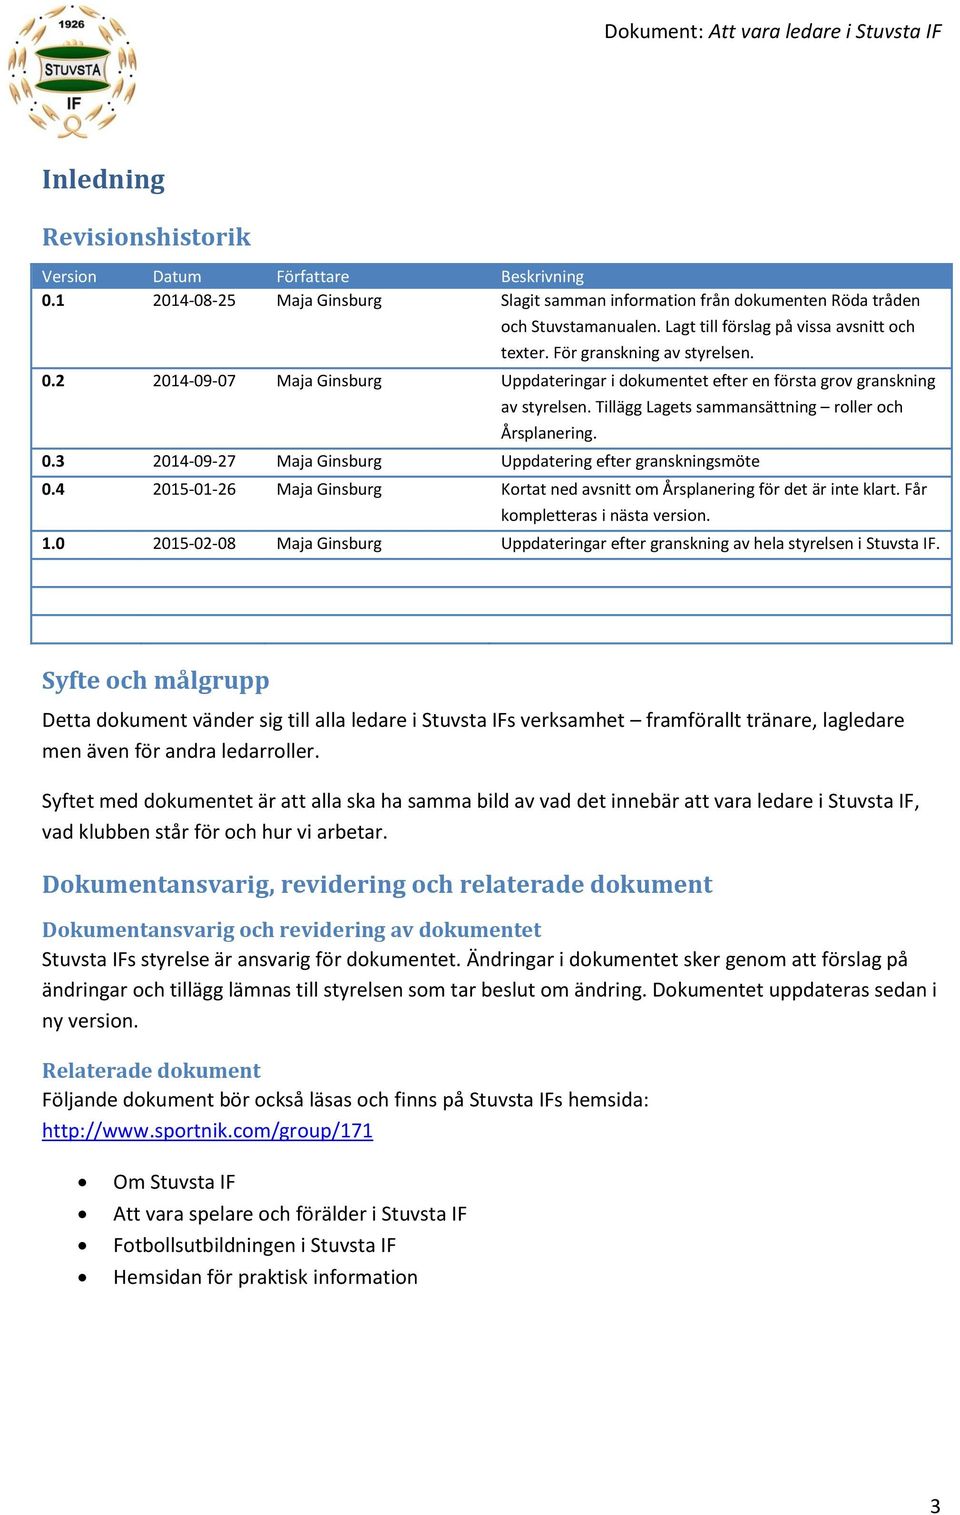 Tillägg Lagets sammansättning roller och Årsplanering. 0.3 2014-09-27 Maja Ginsburg Uppdatering efter granskningsmöte 0.